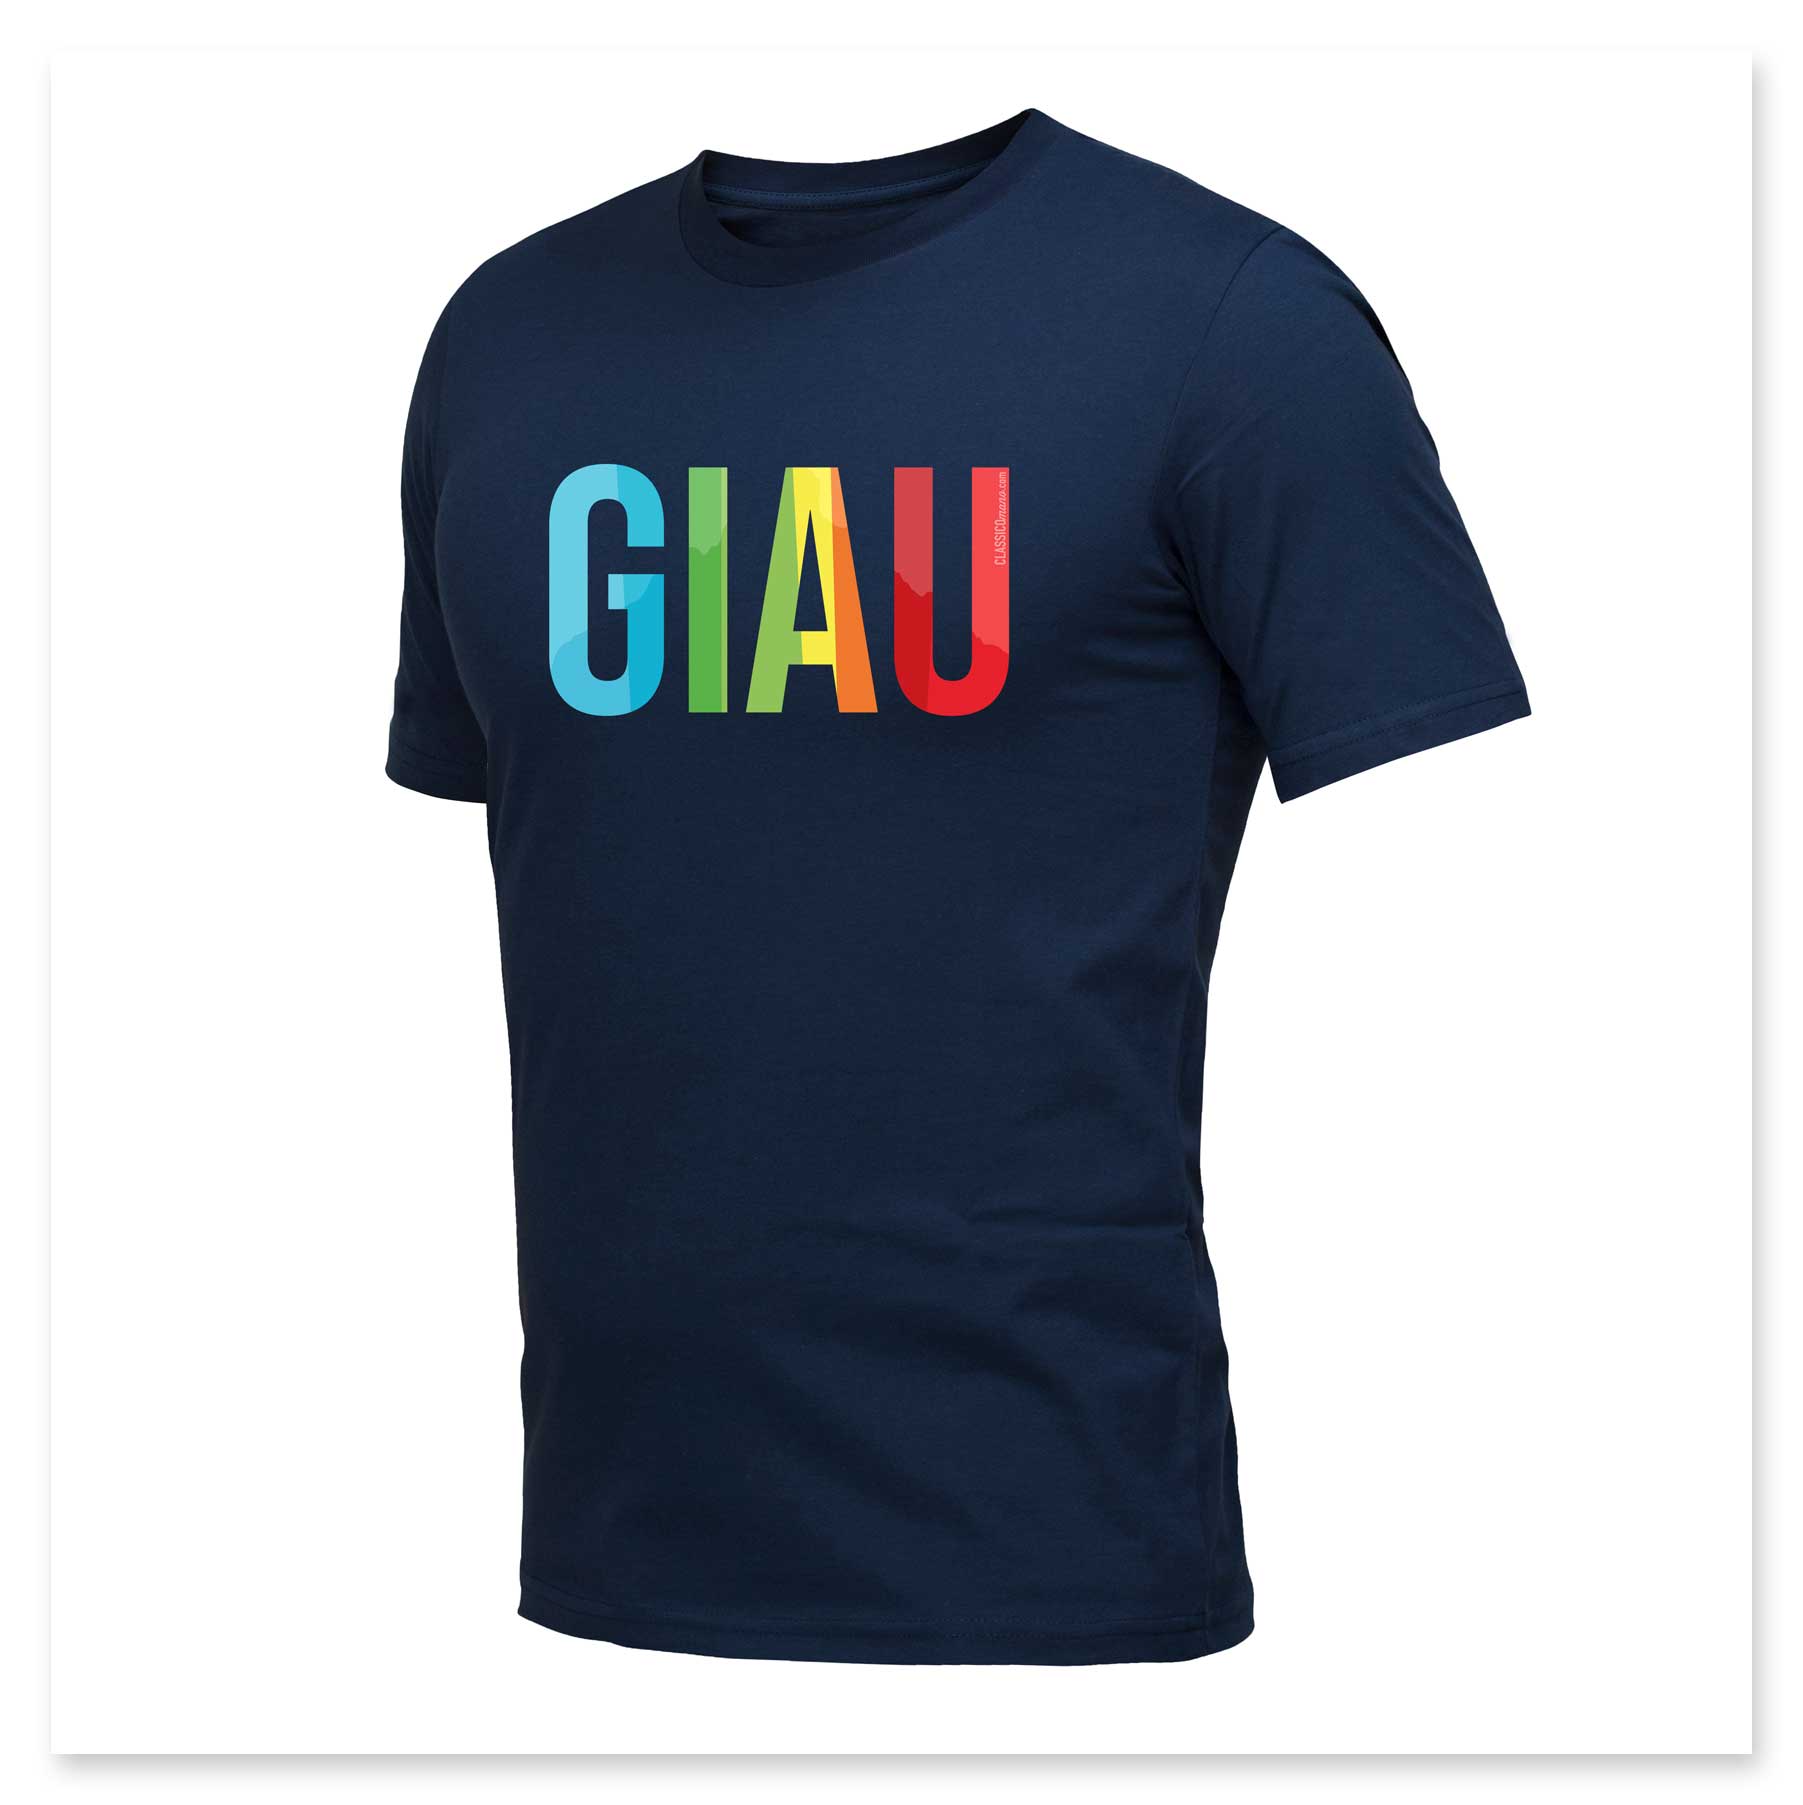 Een blauw t-shirt met het woord giau erop